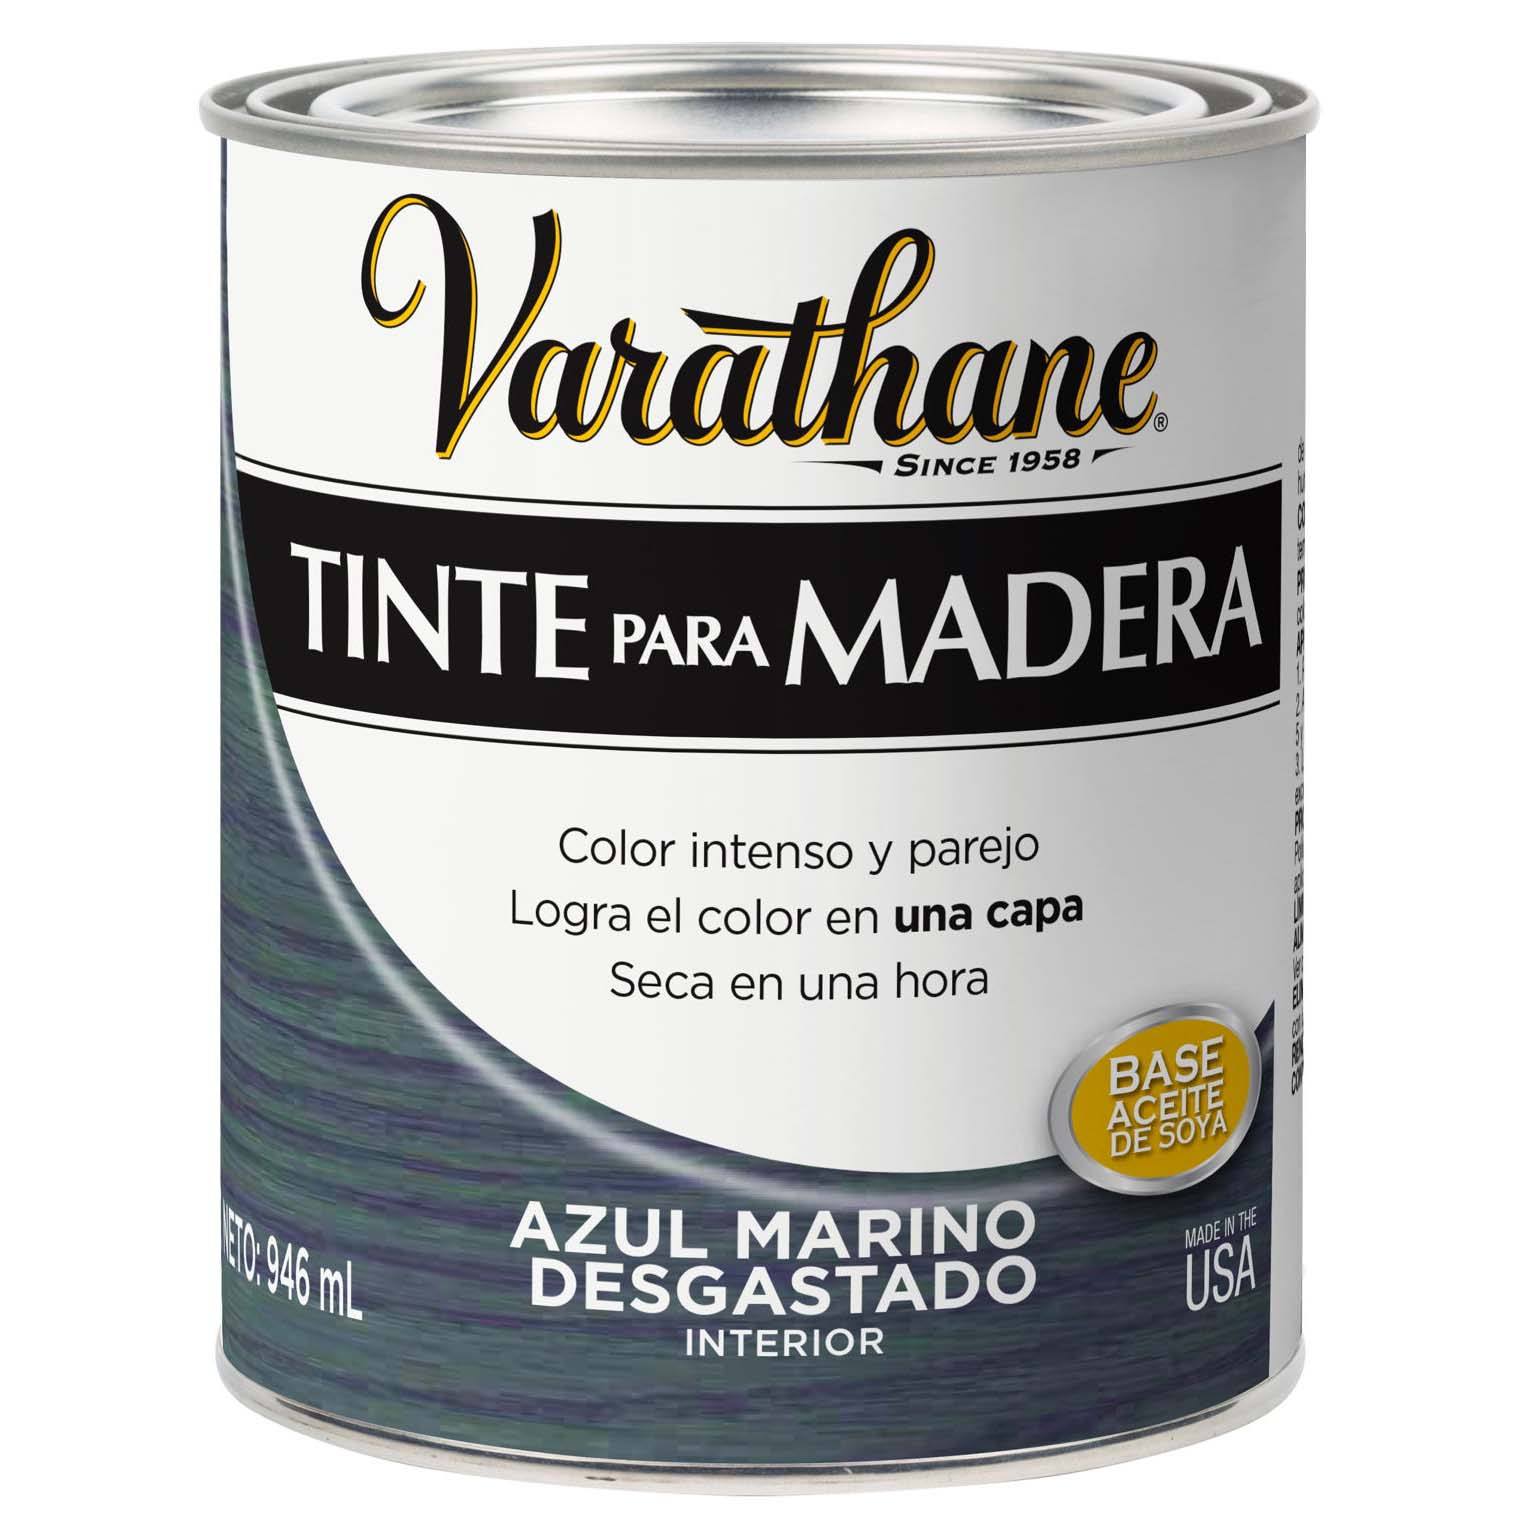 Varathane Tinte para Madera - Colores Desgastados